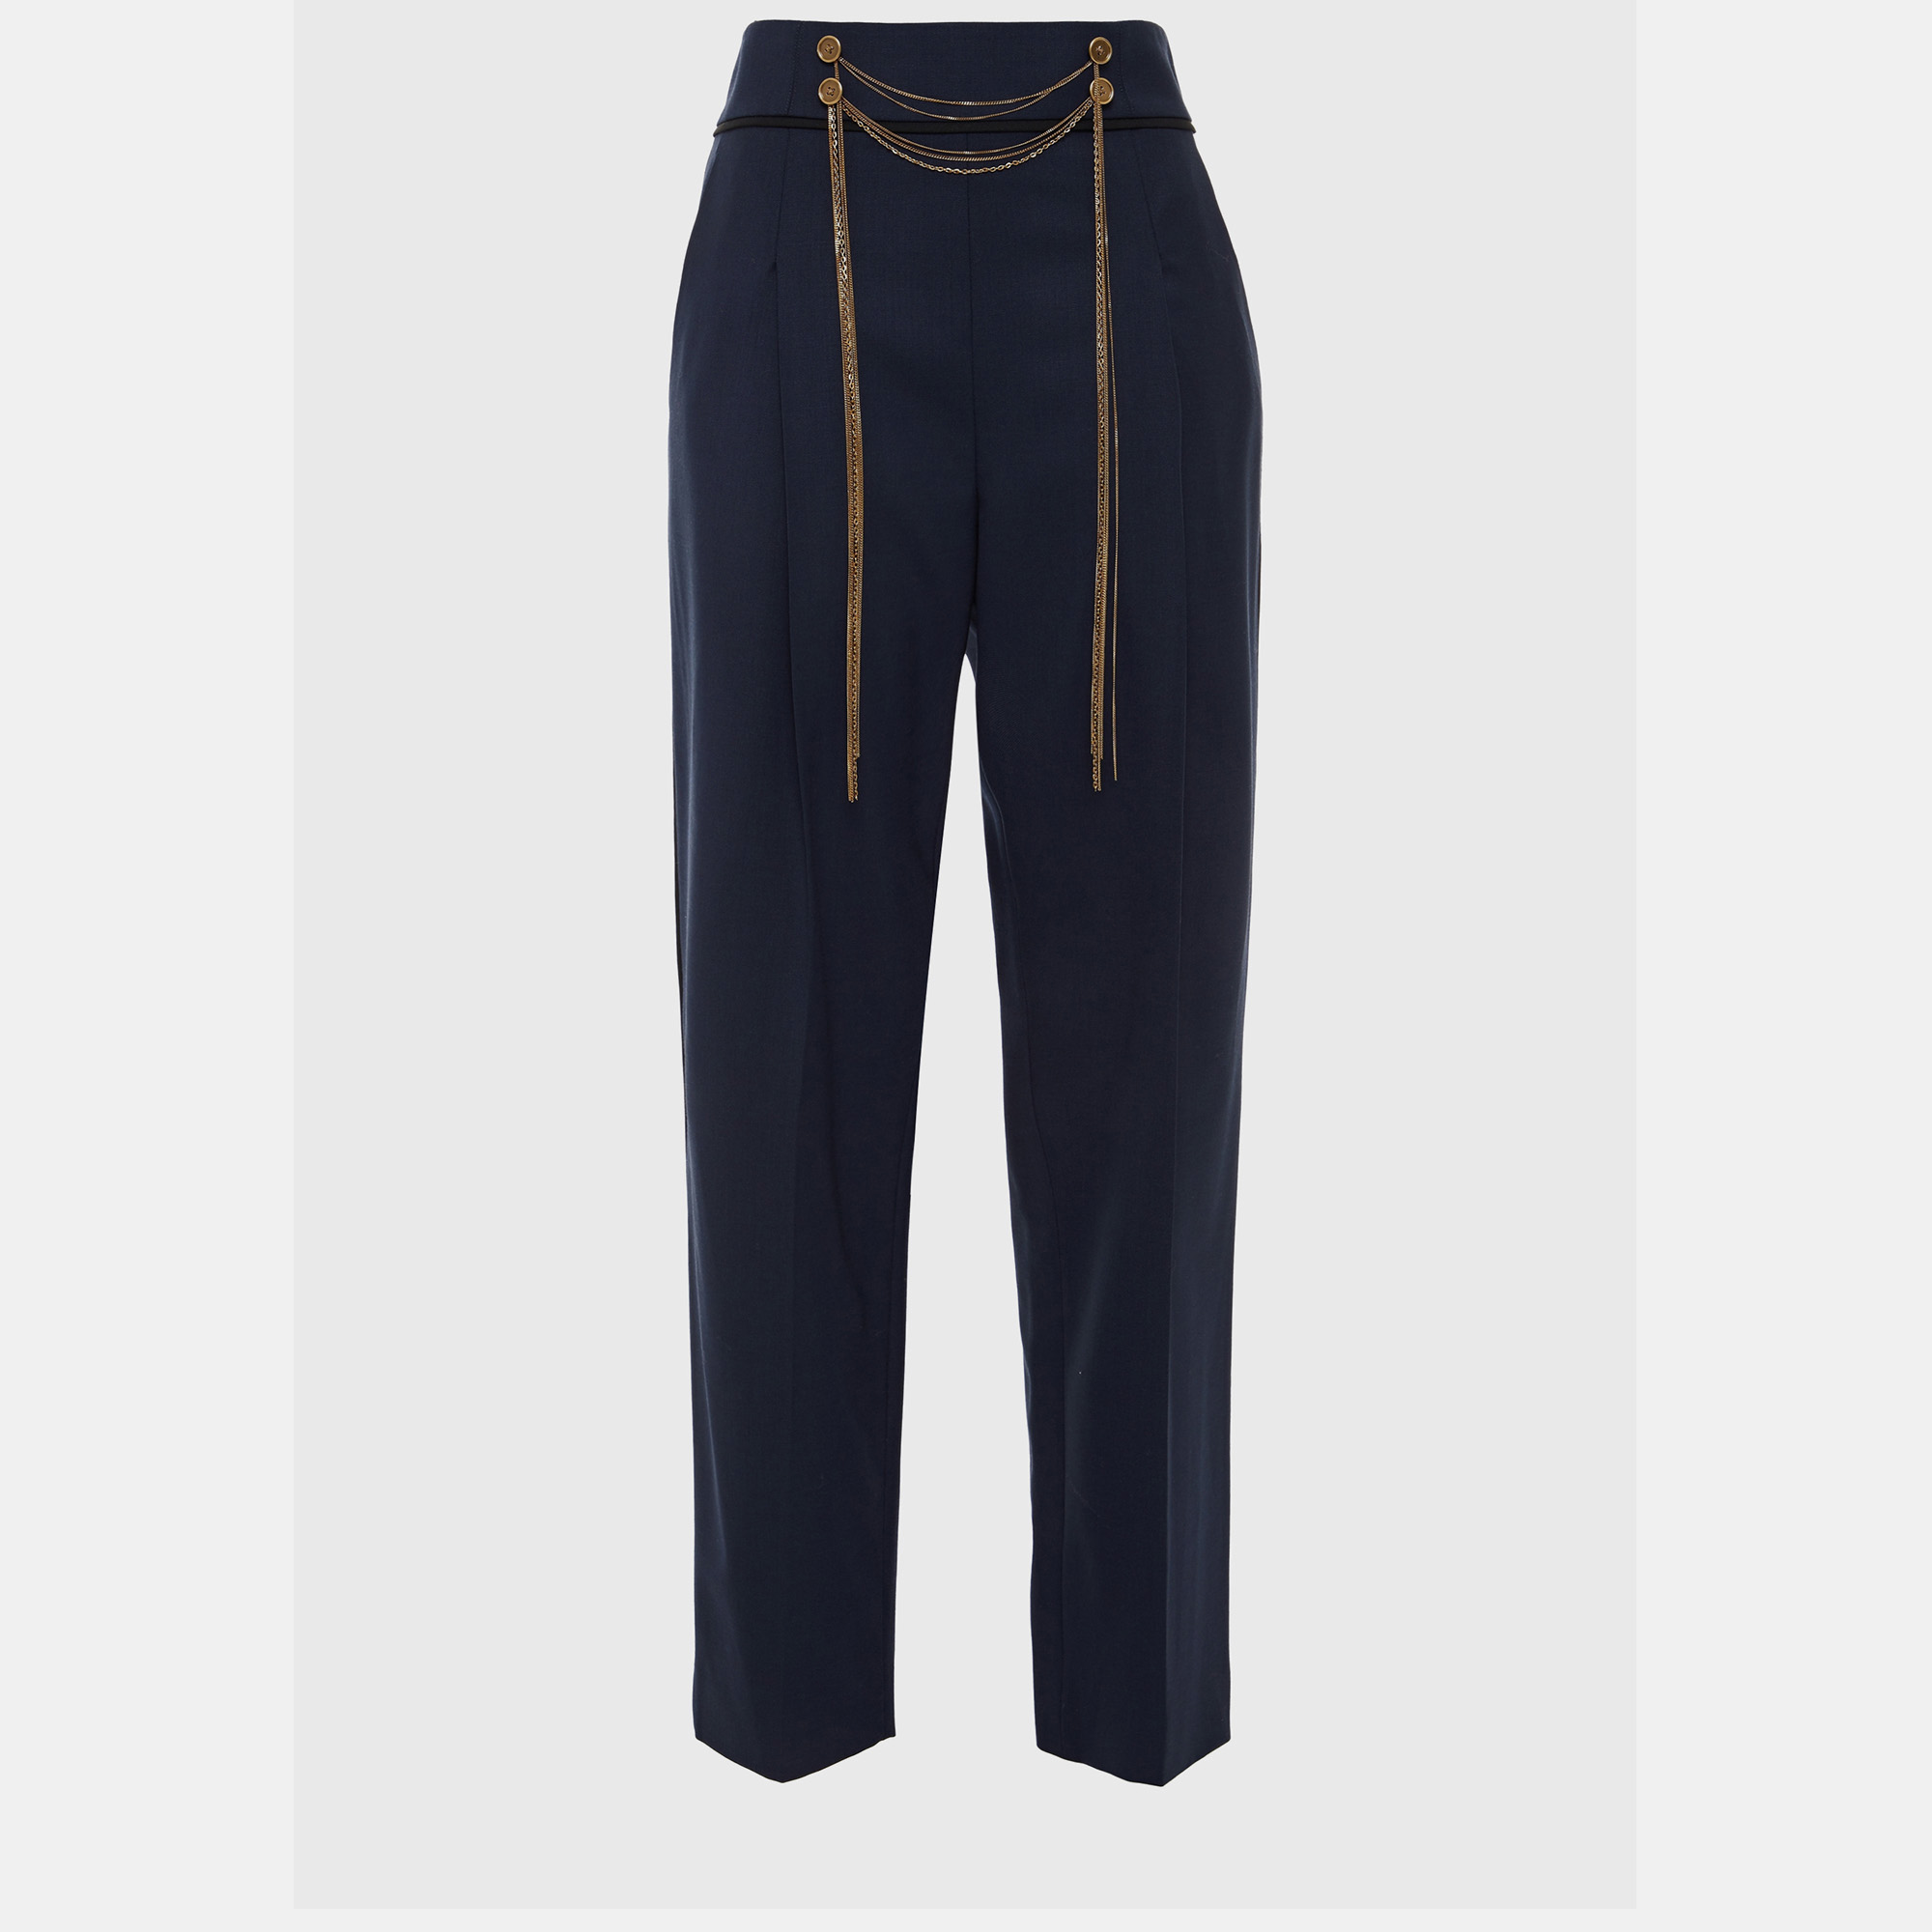 Oscar de la renta navy blue wool trousers size m (6)